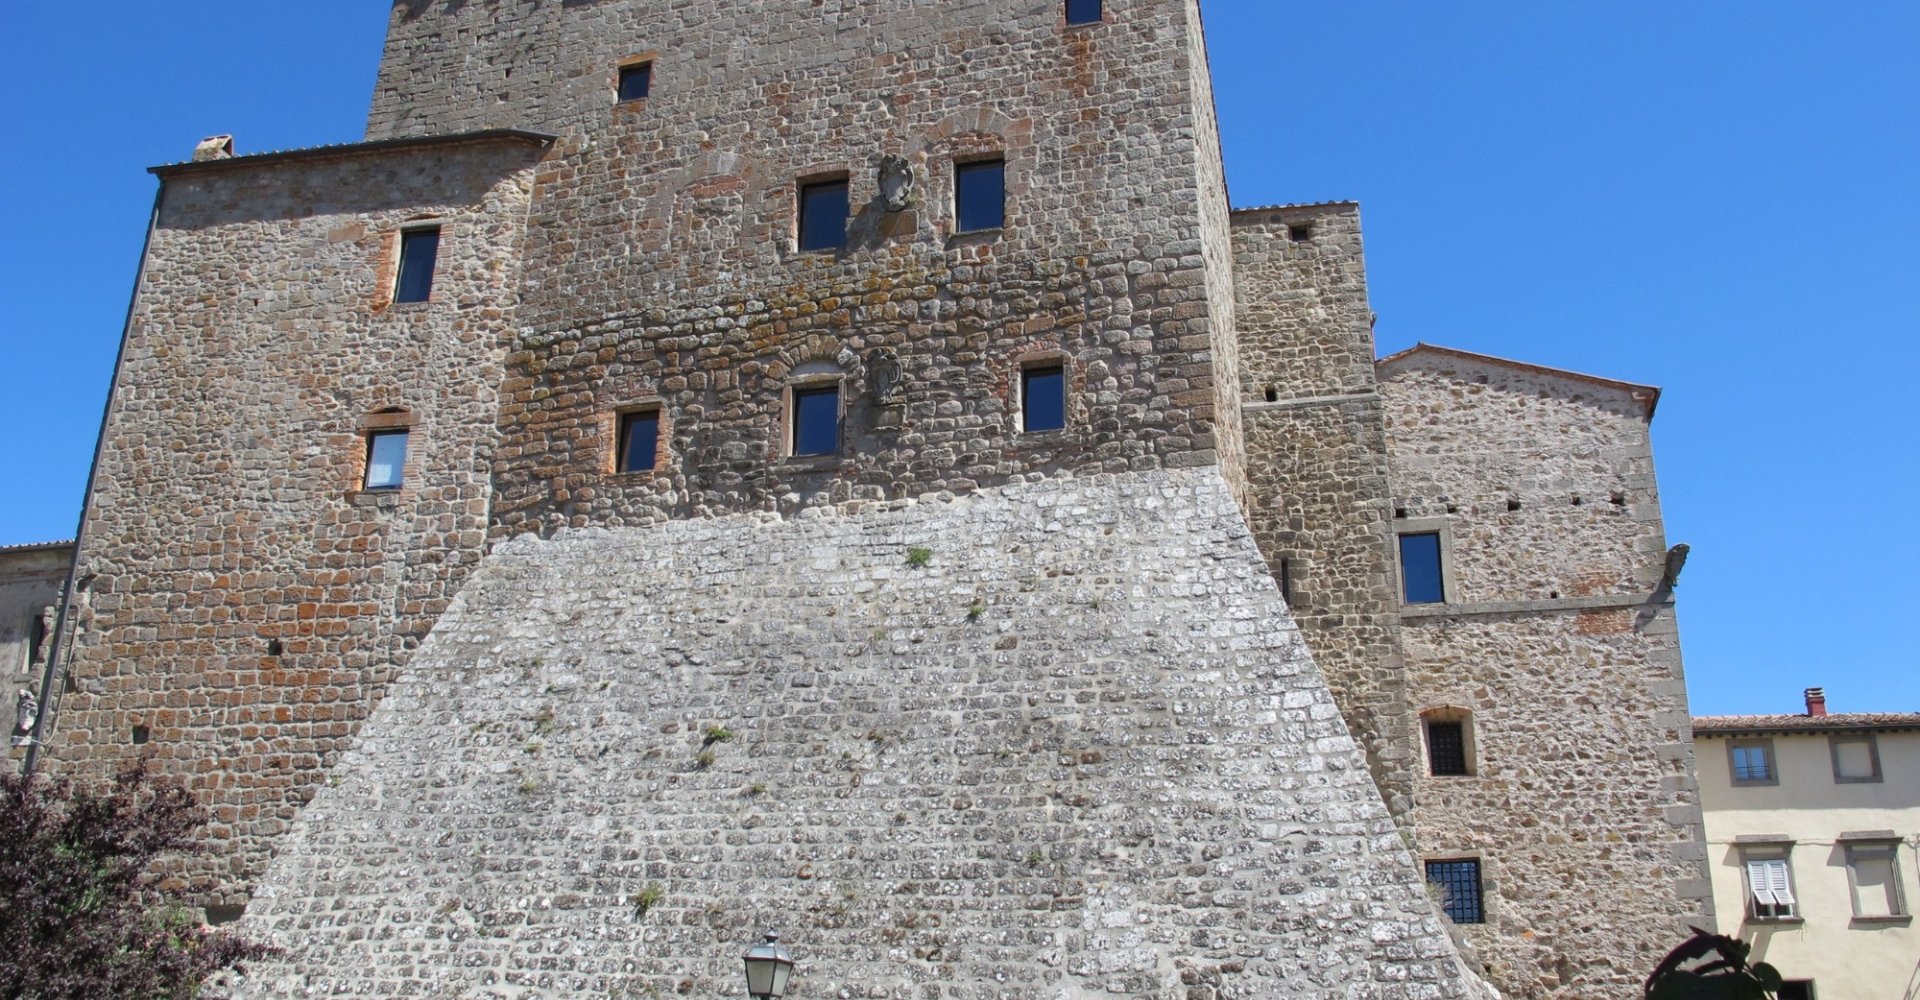 Aldobrandesco Castle of Arcidosso